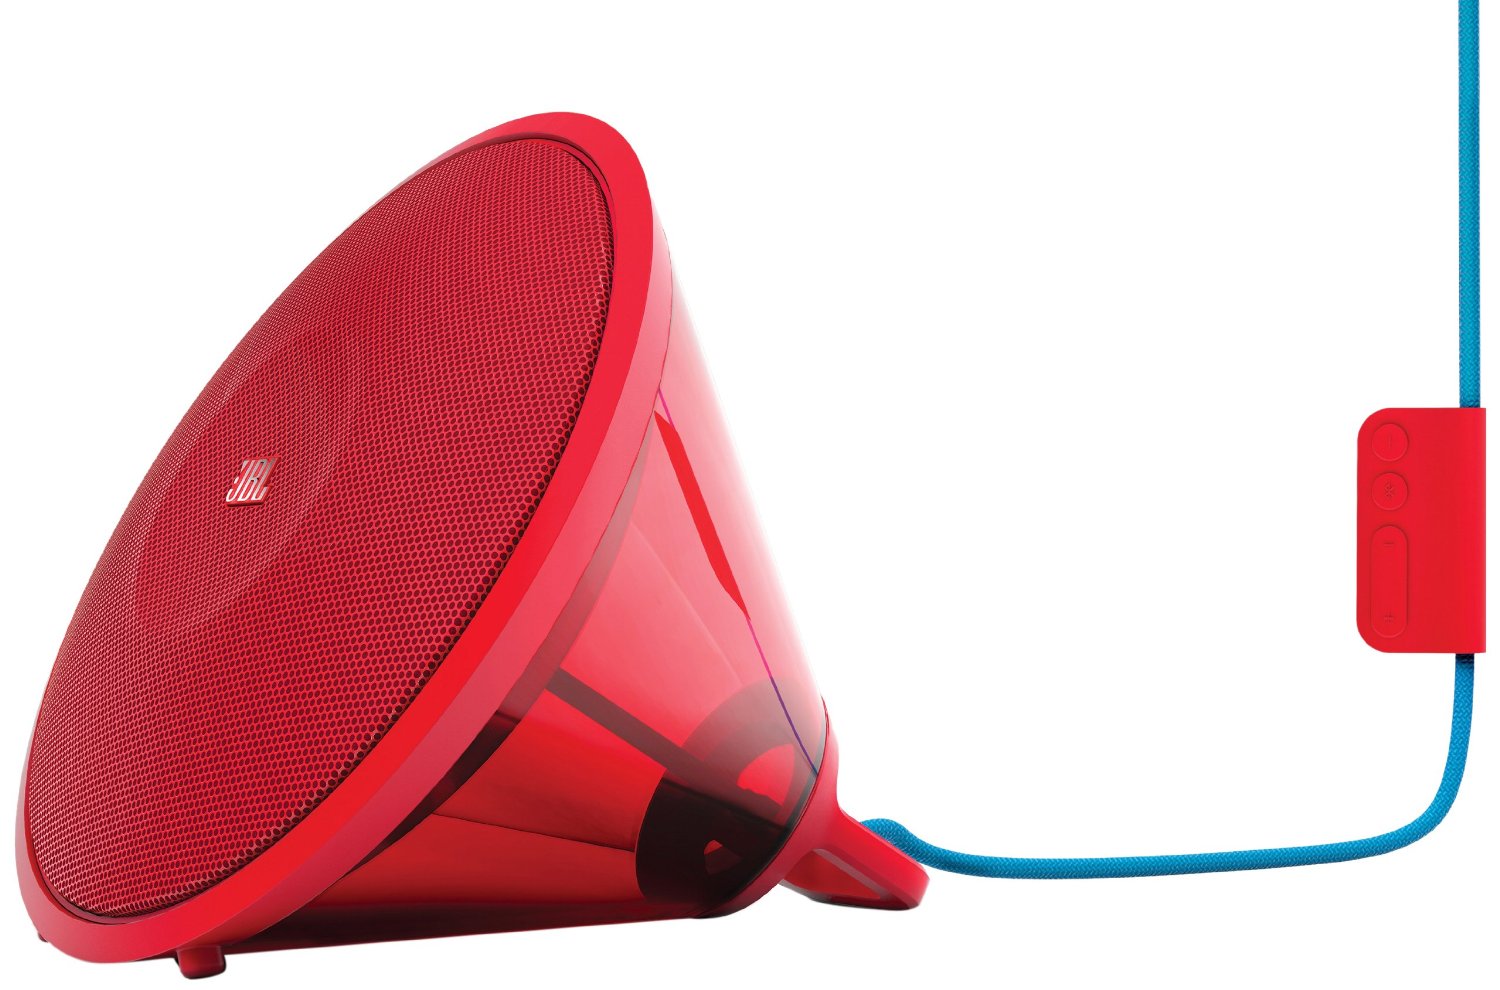 Loa JBL Spark Wireless Bluetooth Speaker (Red)